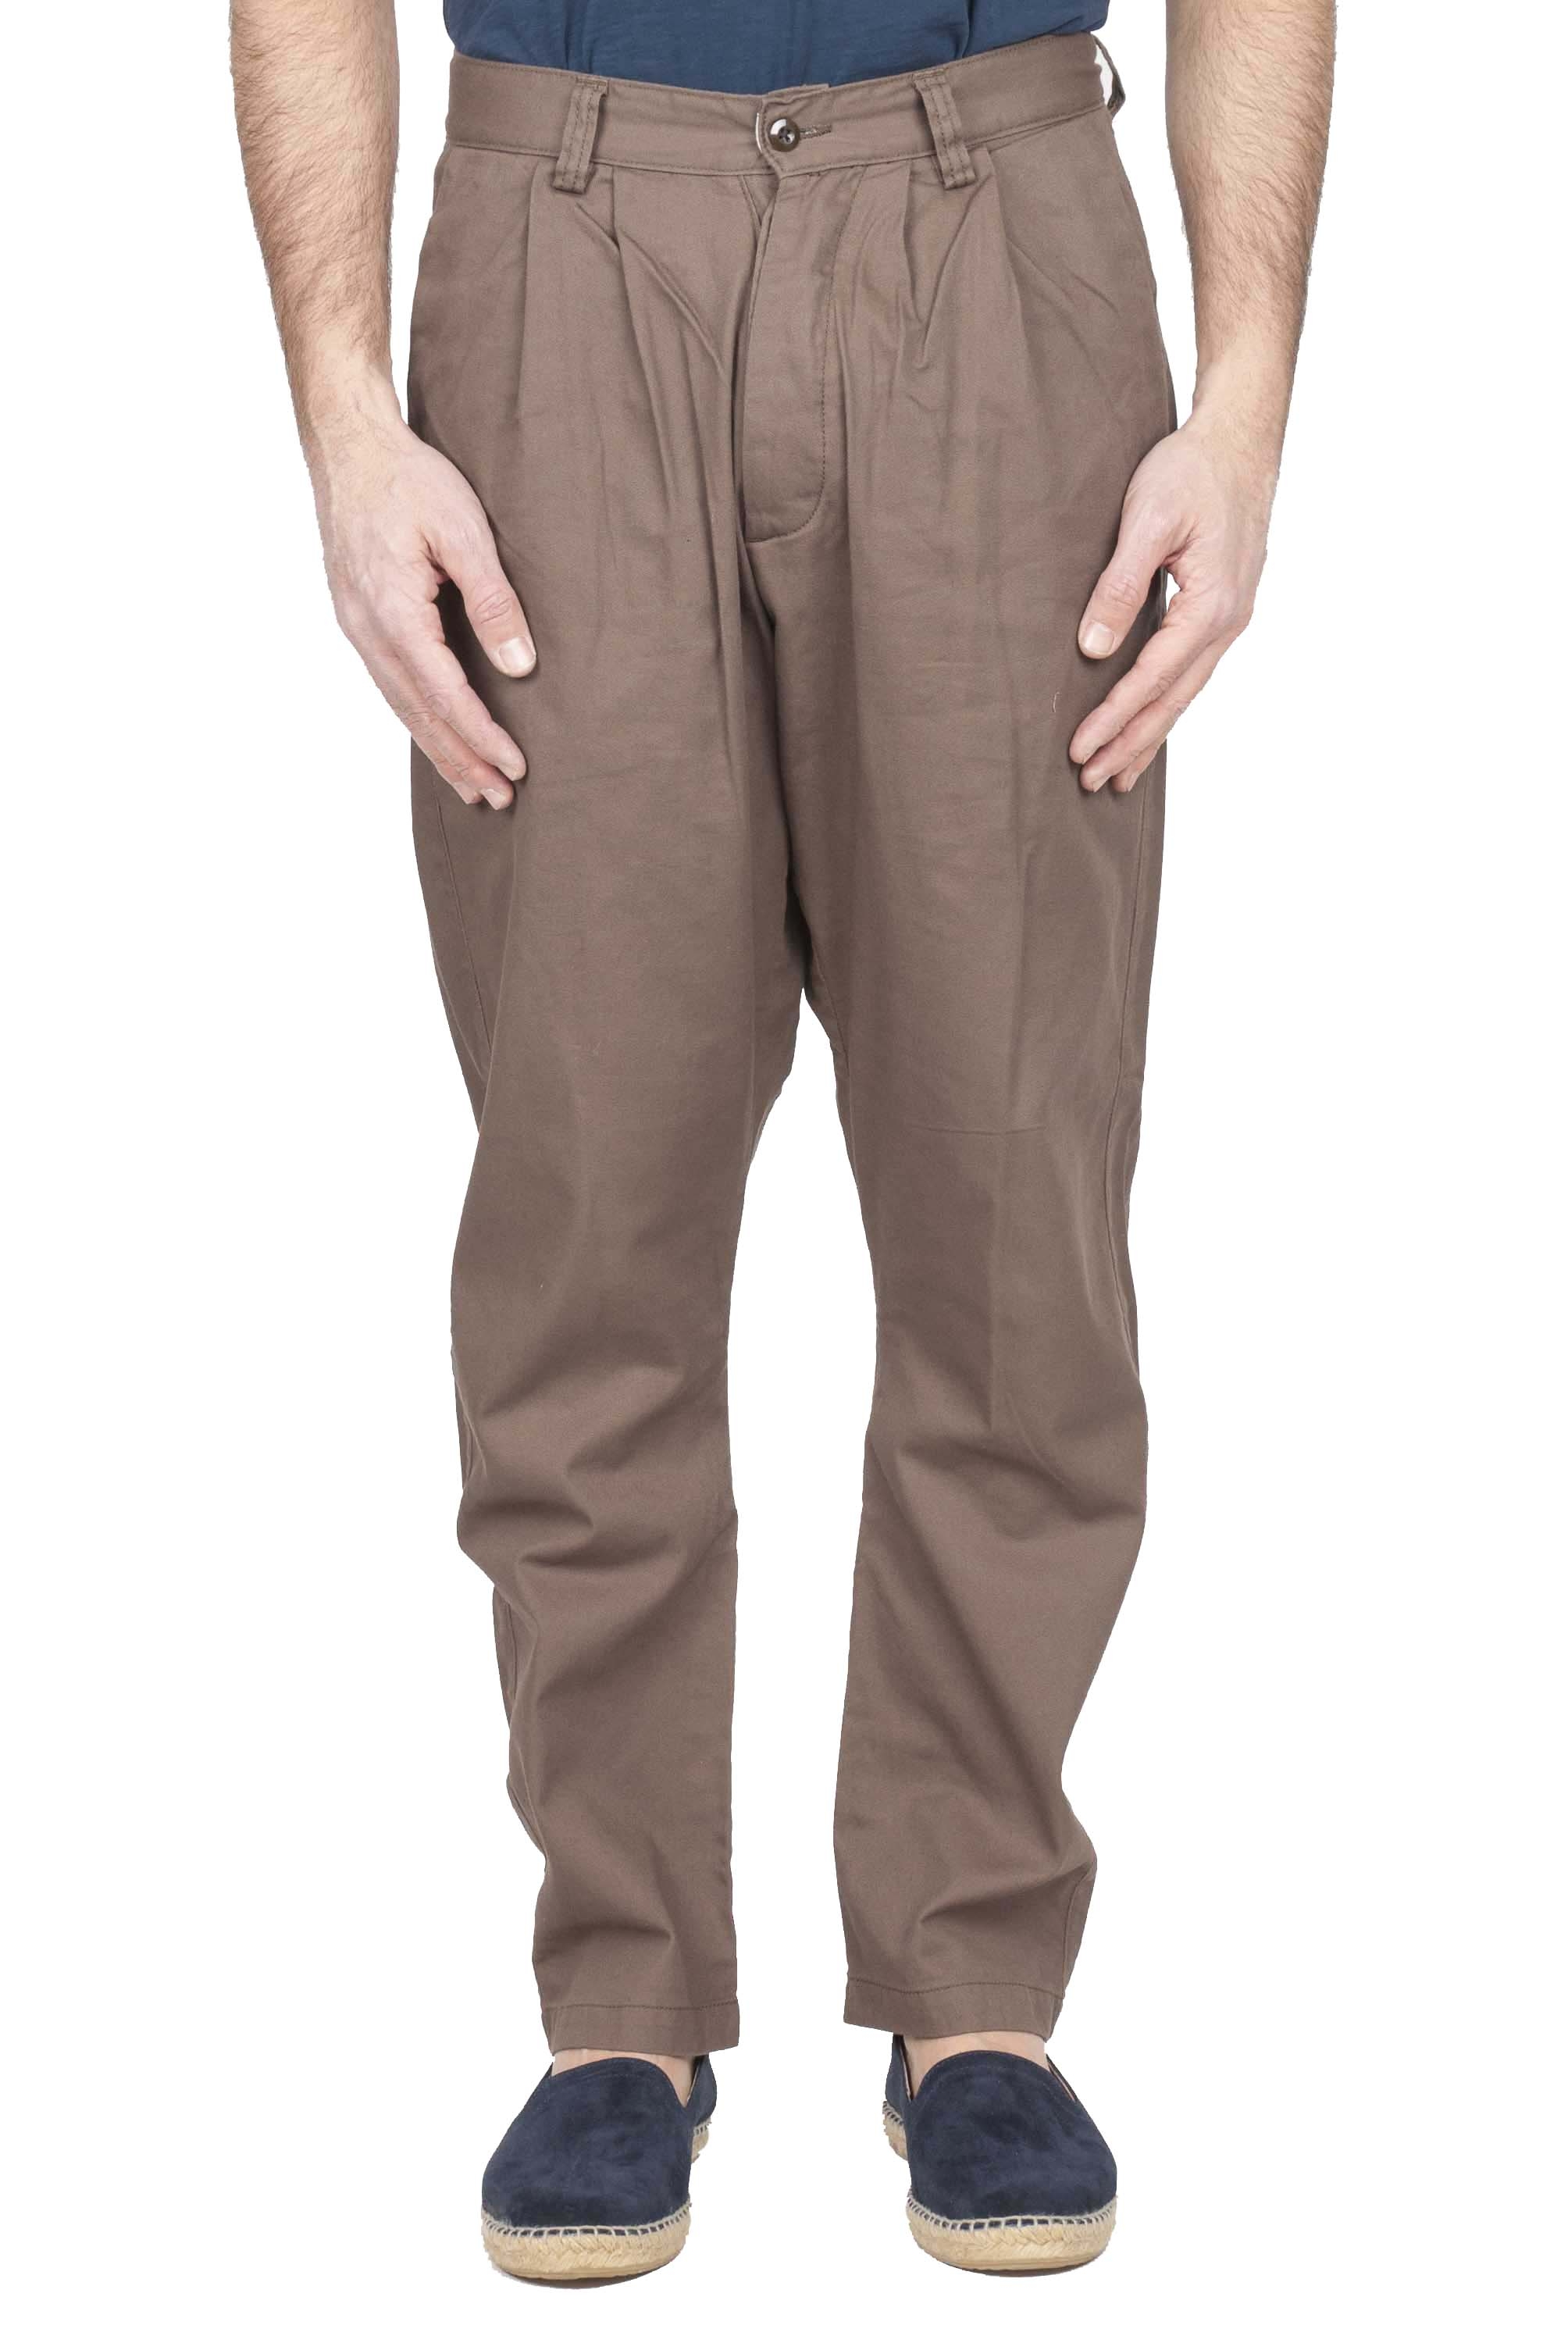 SBU 01136 Pantalones de trabajo de algodón 01